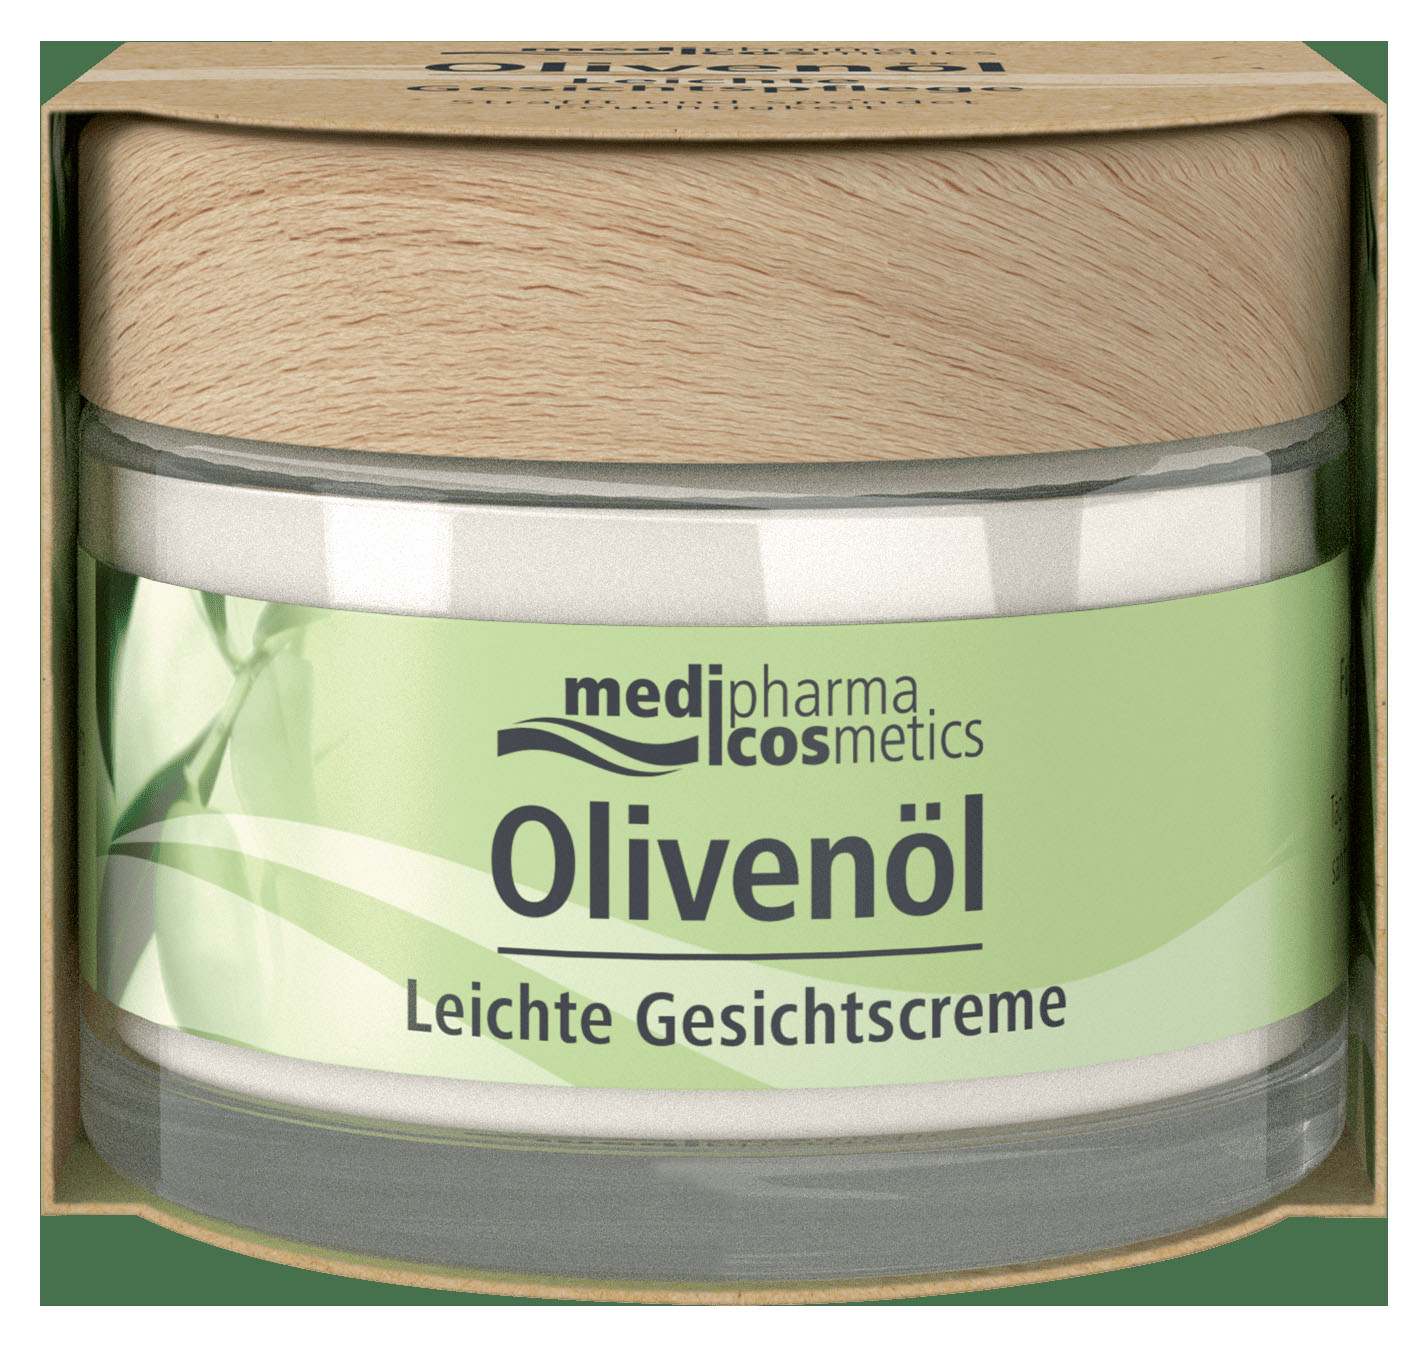 Купить Medipharma Cosmetics Легкий крем для лица, 50 мл (Medipharma Cosmetics, Olivenol), Германия